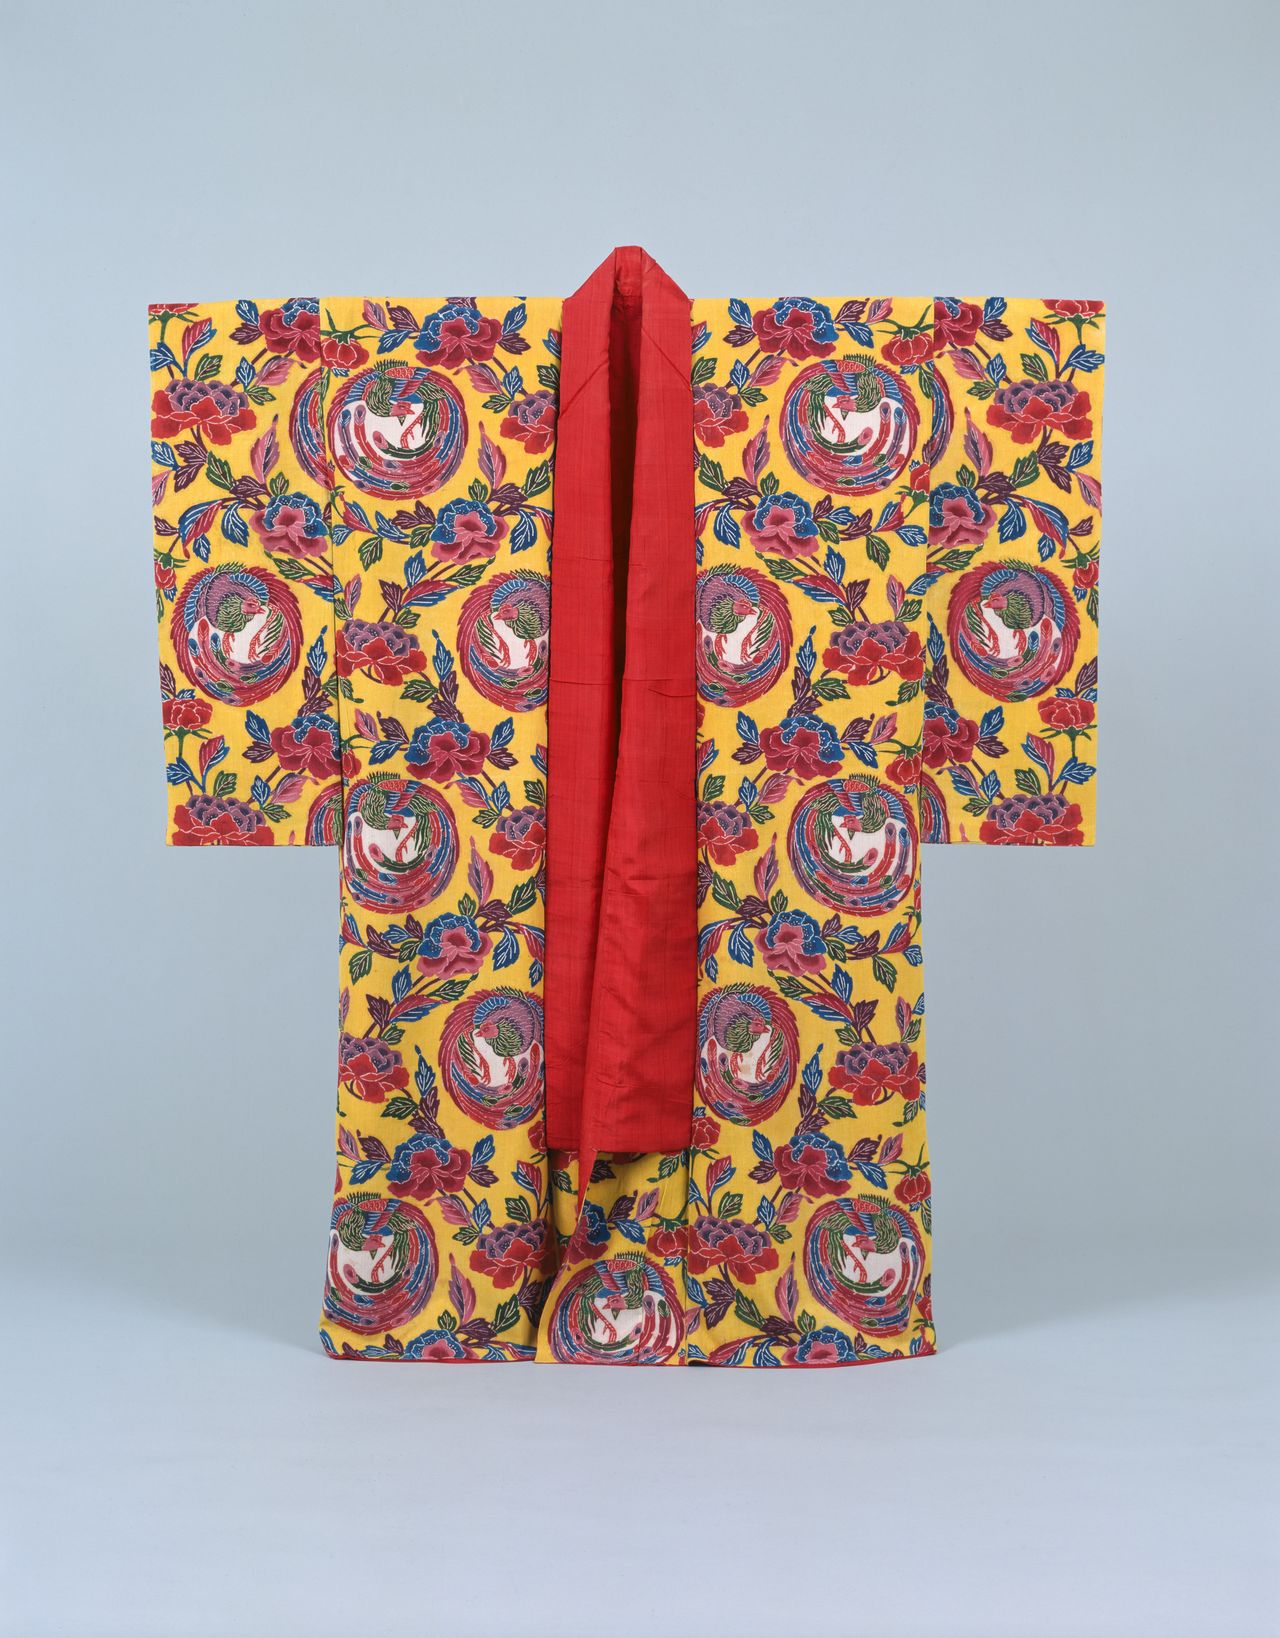 Kimono bingata en crêpe de soie doublée à motifs de phénix et de pivoines. Il était destiné à être porté par les garçons de la classe dominante avant la cérémonie de passage à l’âge adulte. Le jaune vif est à base d’orpiment, un minéral toxique contenant du sulfure et utilisé comme colorant. (Collection du Musée historique de la ville de Naha).